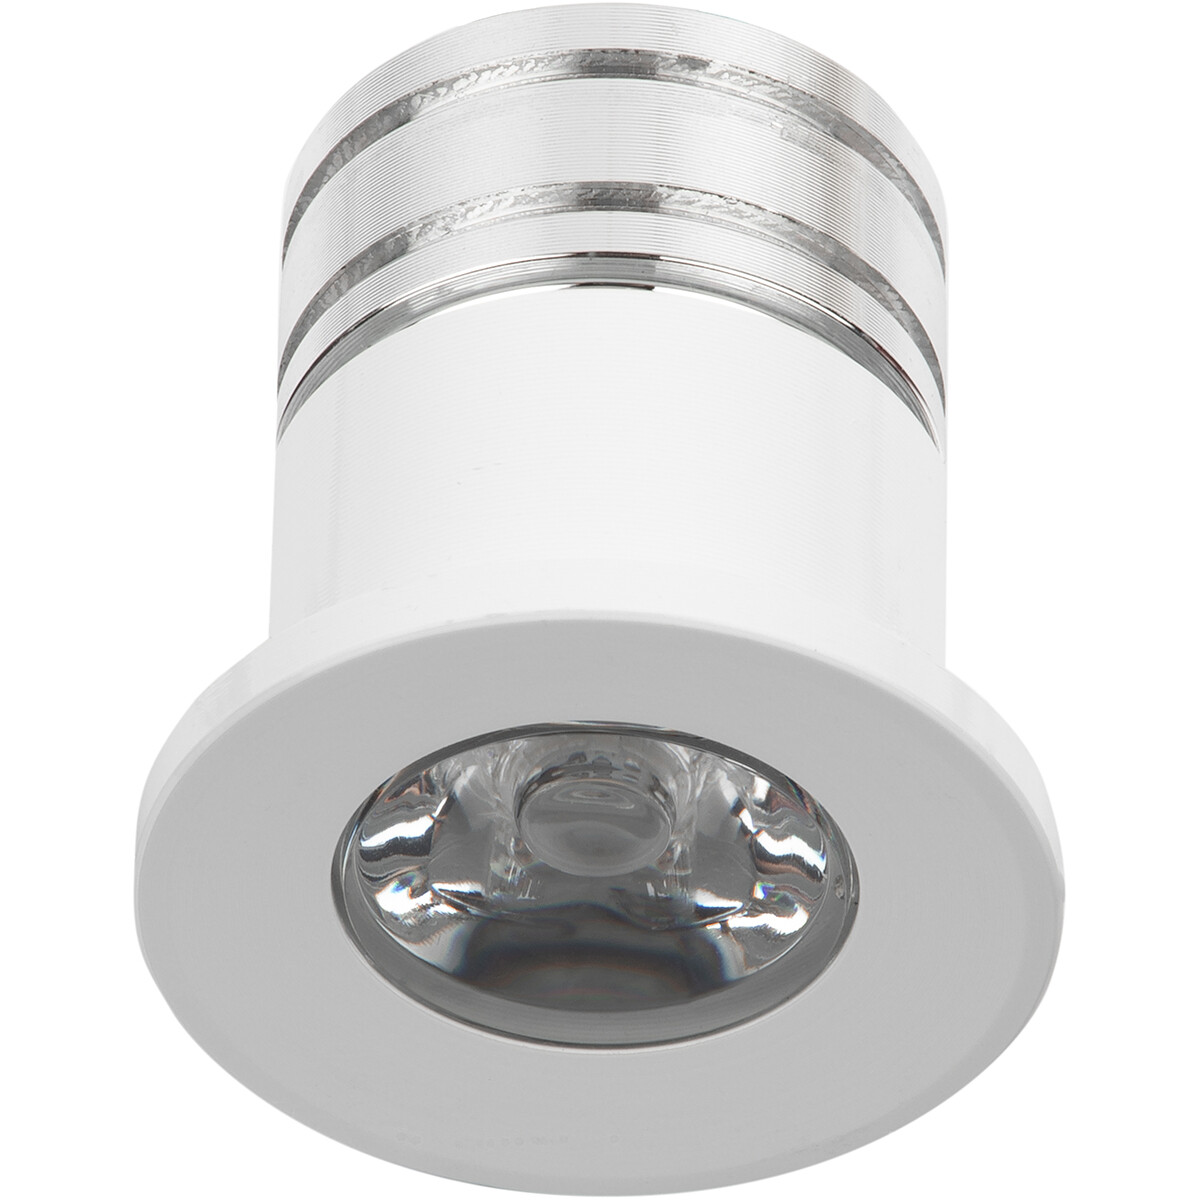 LED Veranda Spot Verlichting 3W Natuurlijk Wit 4000K Inbouw Dimbaar Rond Mat Wit Aluminium Ø31mm